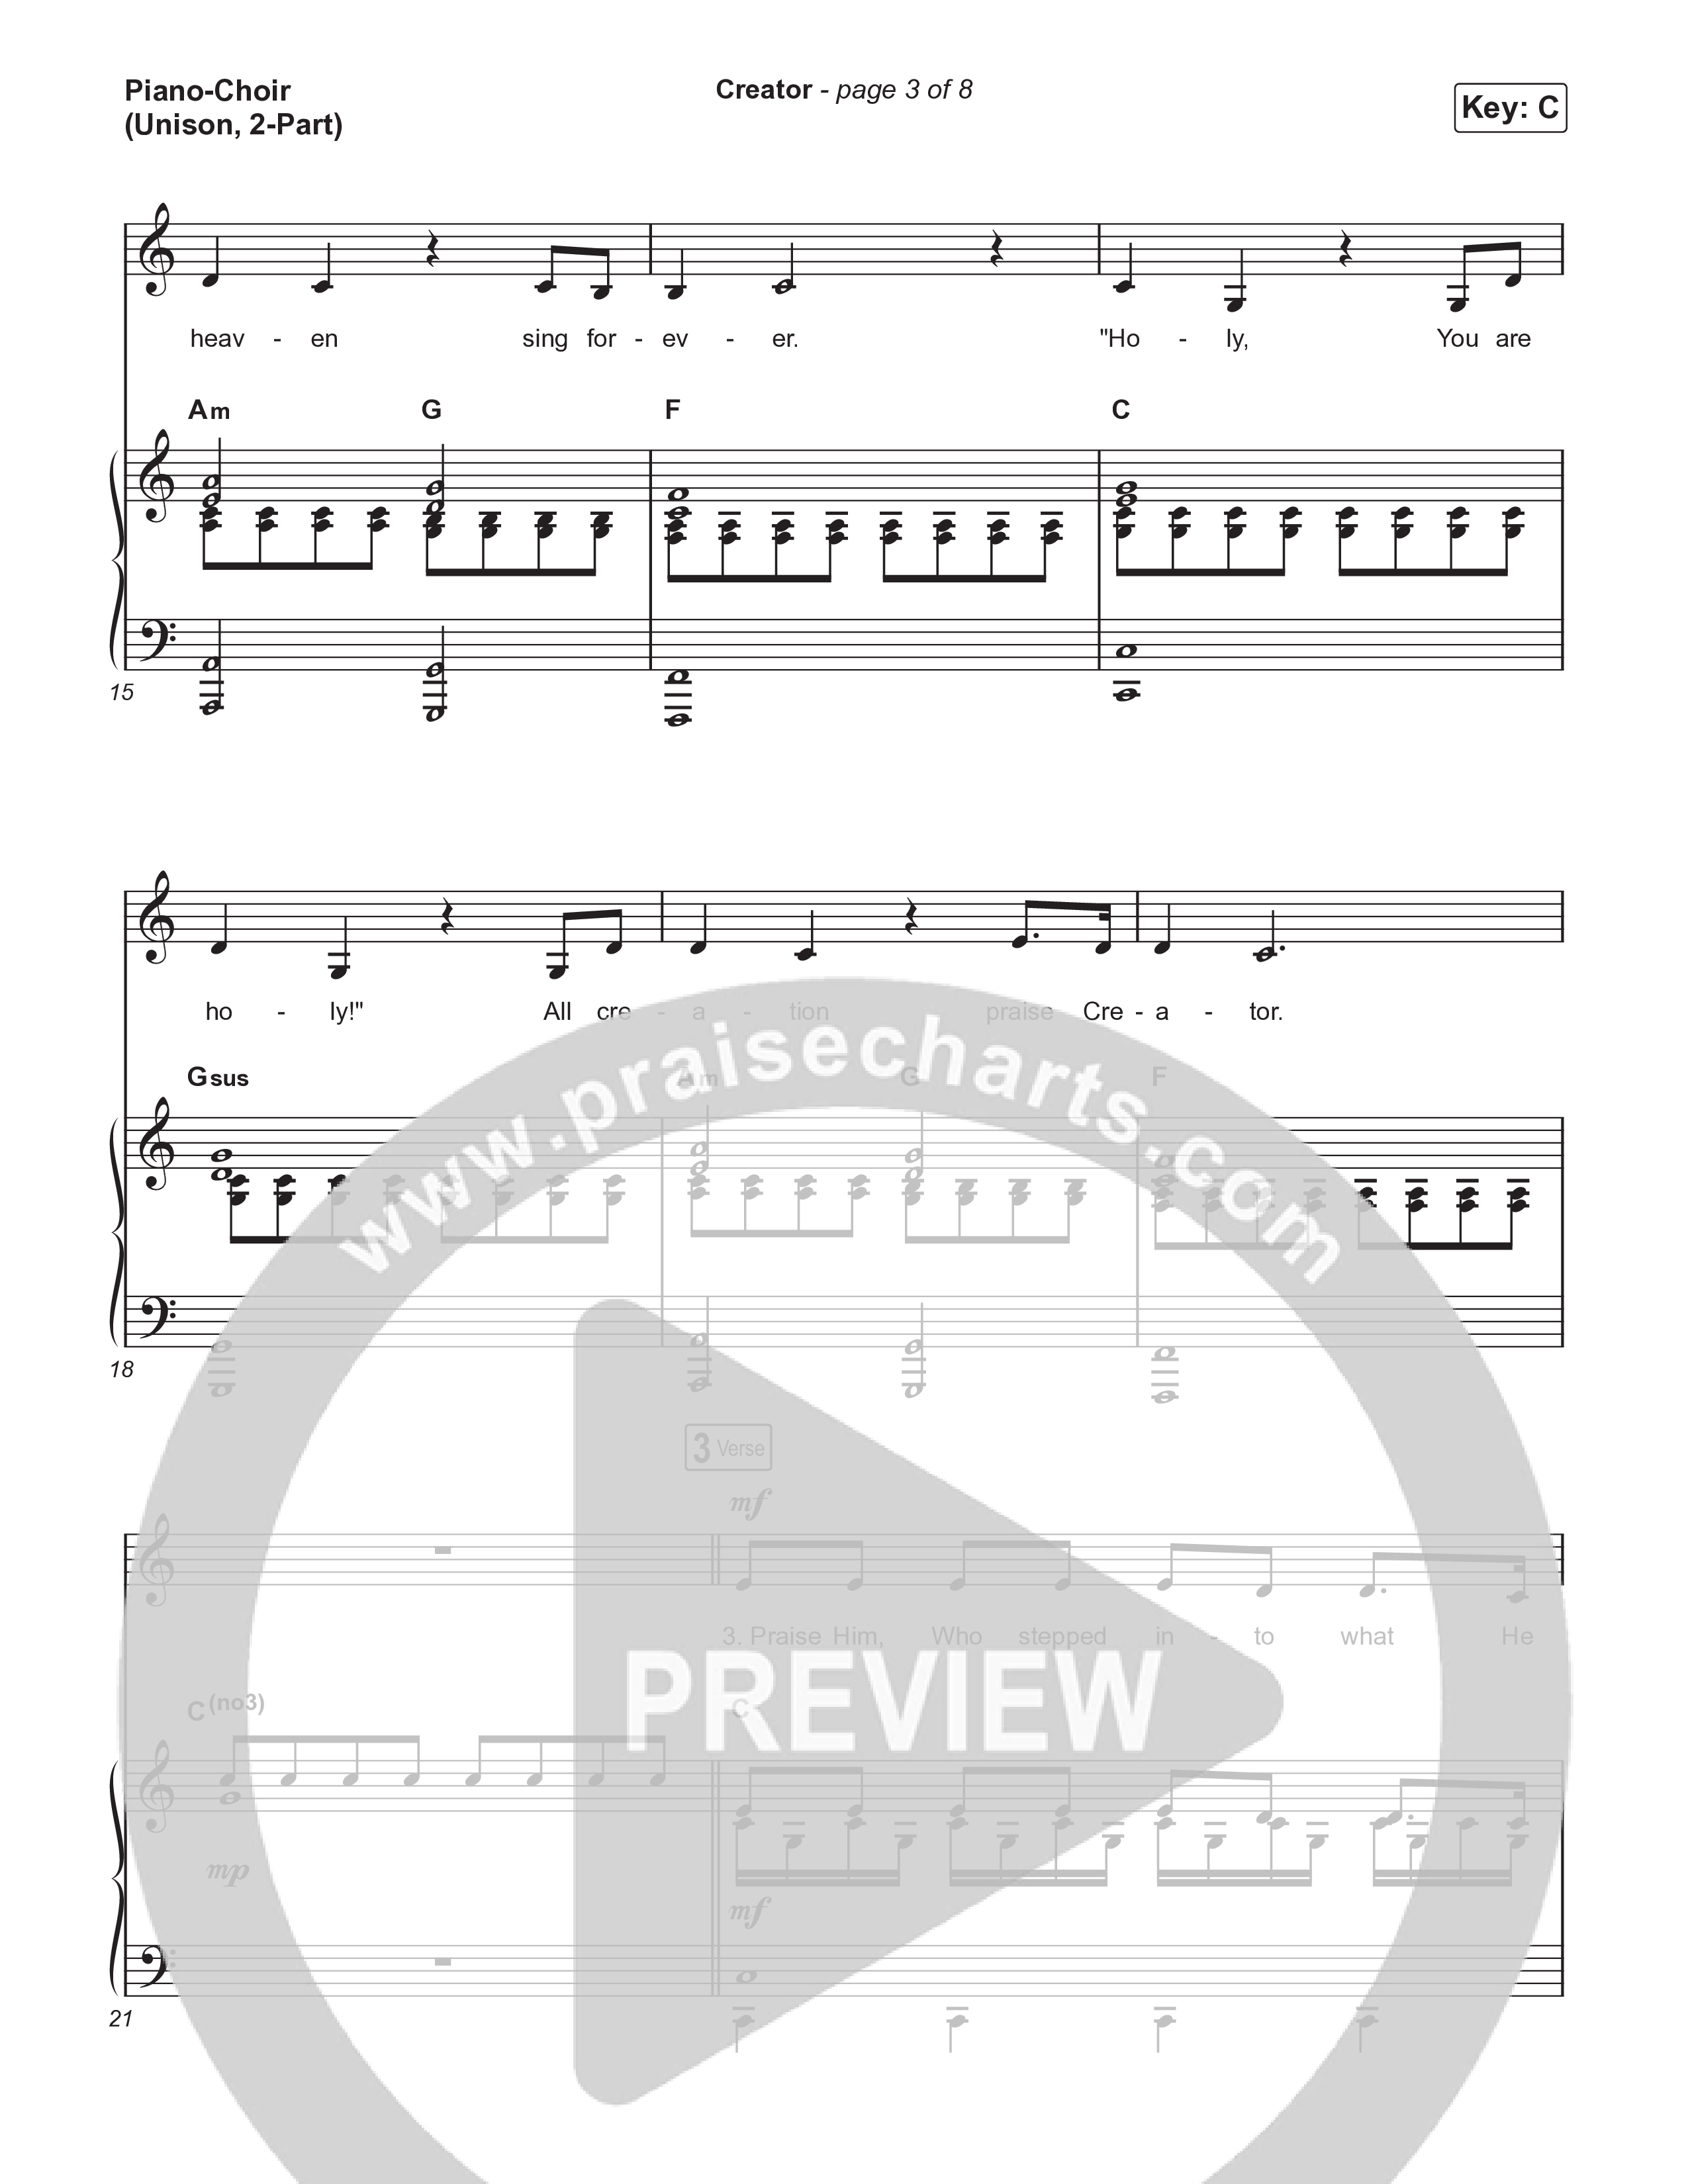 Creator (Unison/2-Part) Piano/Choir  (Uni/2-Part) (Phil Wickham)